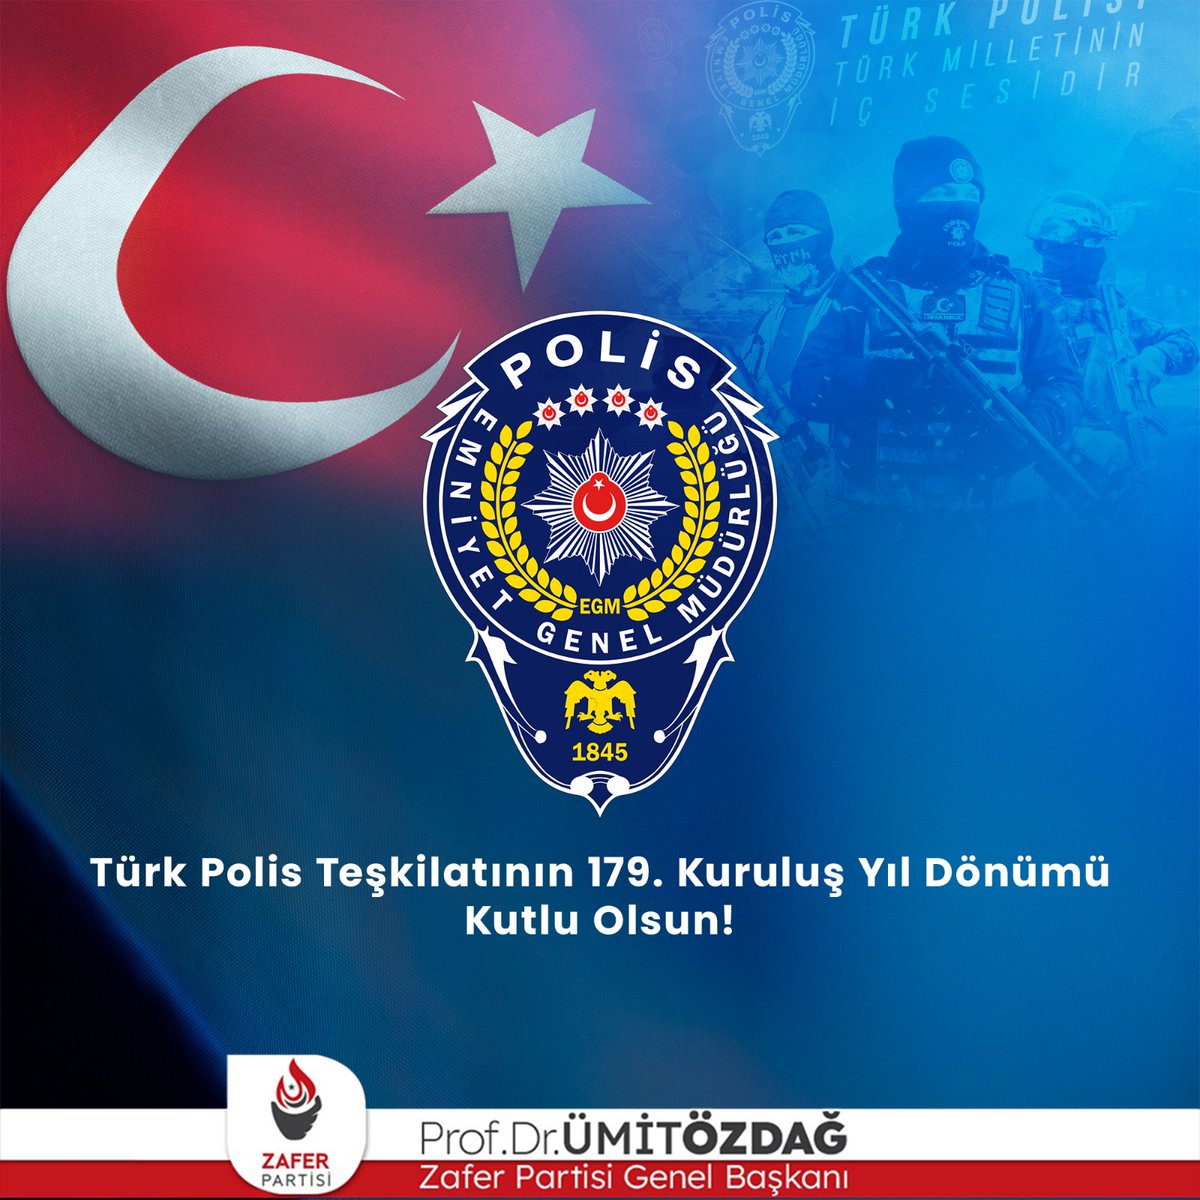 Zor şartlarda çalışıyor olmalarına rağmen, pek çok haklarından mahrum bırakılan polis kardeşlerimizin yanında olduğumuzu bir kez daha belirtiyor, bu vesile ile kahraman Türk Polis Teşkilatı'nın 179. kuruluş yıl dönümünü kutluyorum. #TürkPolisTeşkilatı179Yaşında…